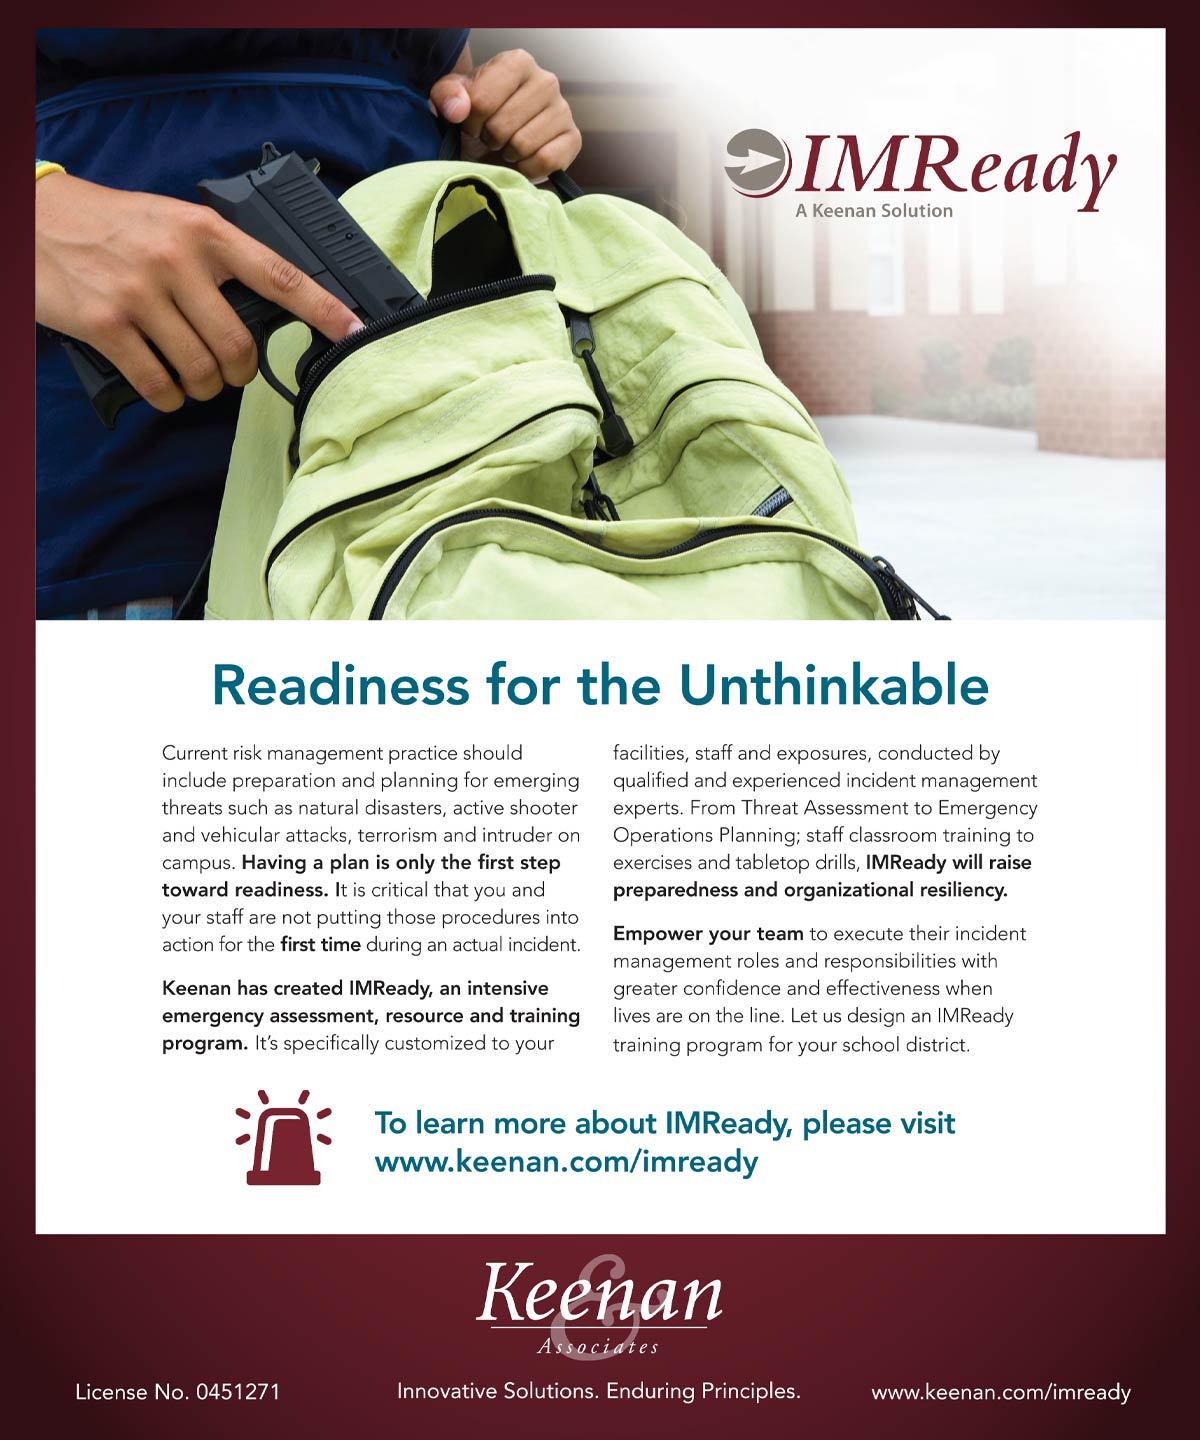 Keenan Associates Advertisement